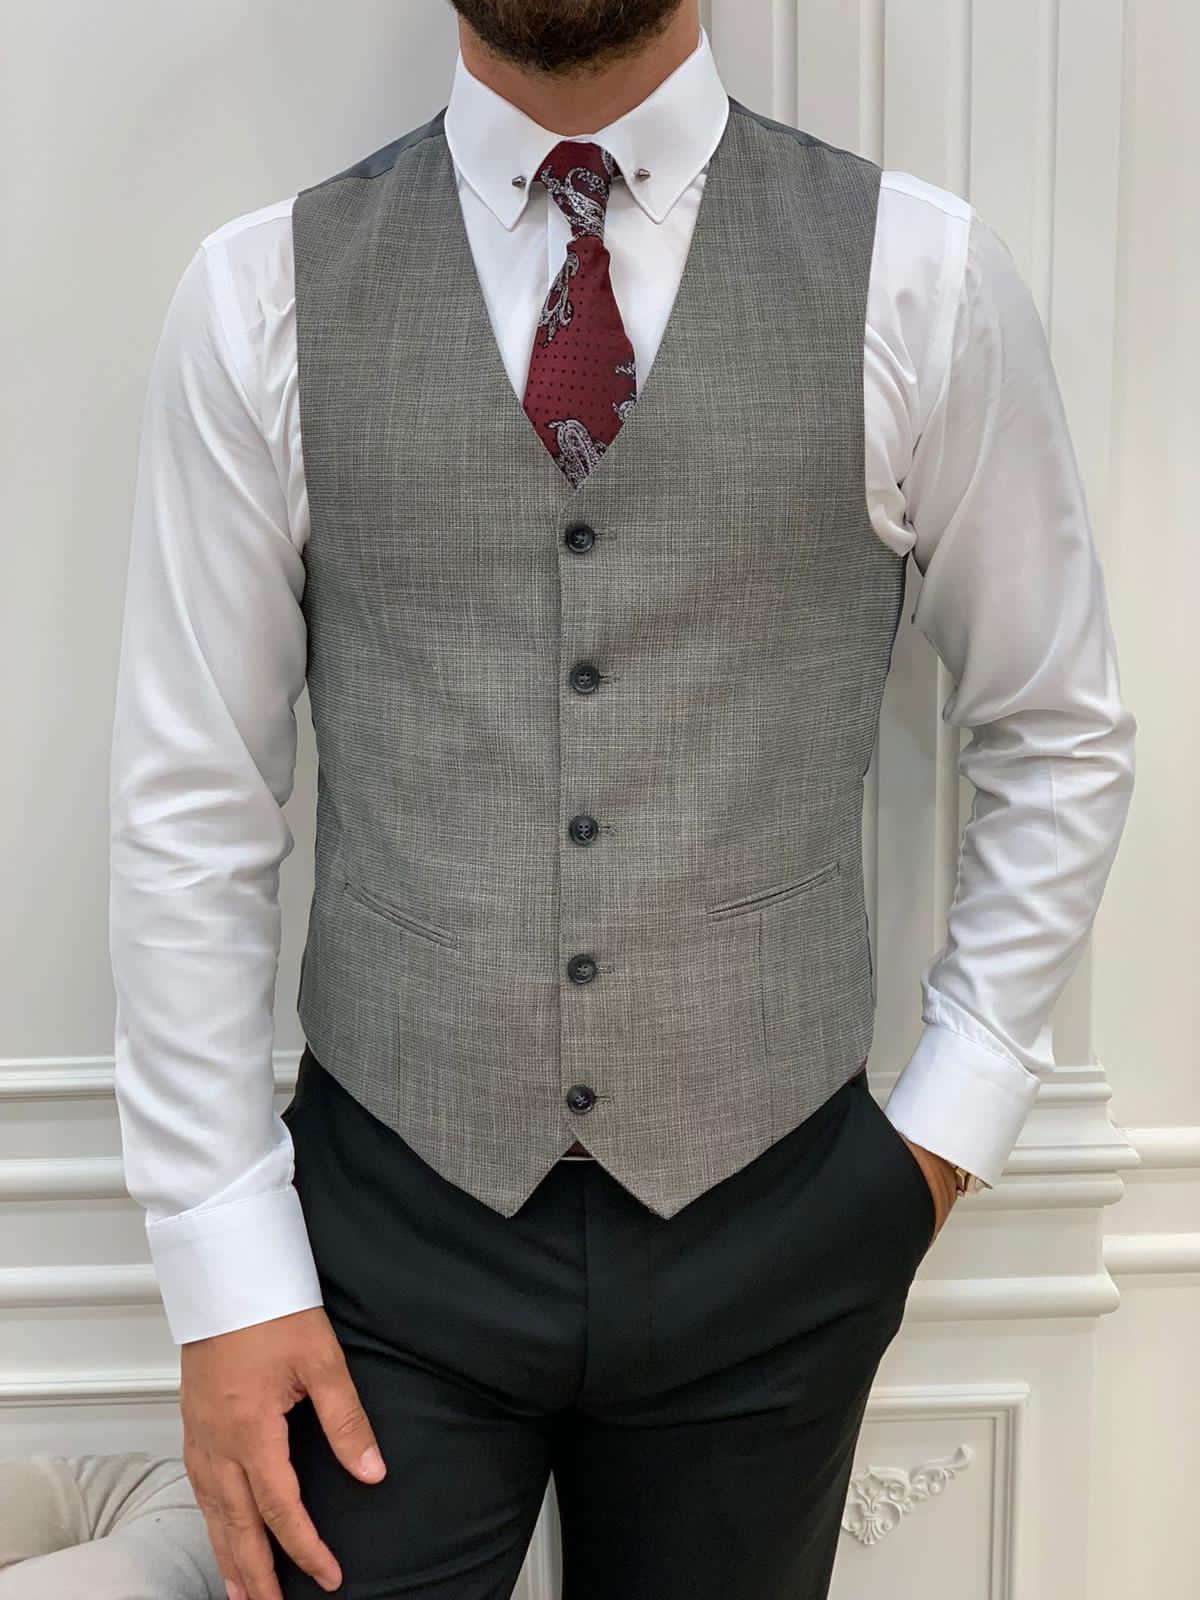 Black Suit Vests & Tuxedo Vests | Gentleman's Guru